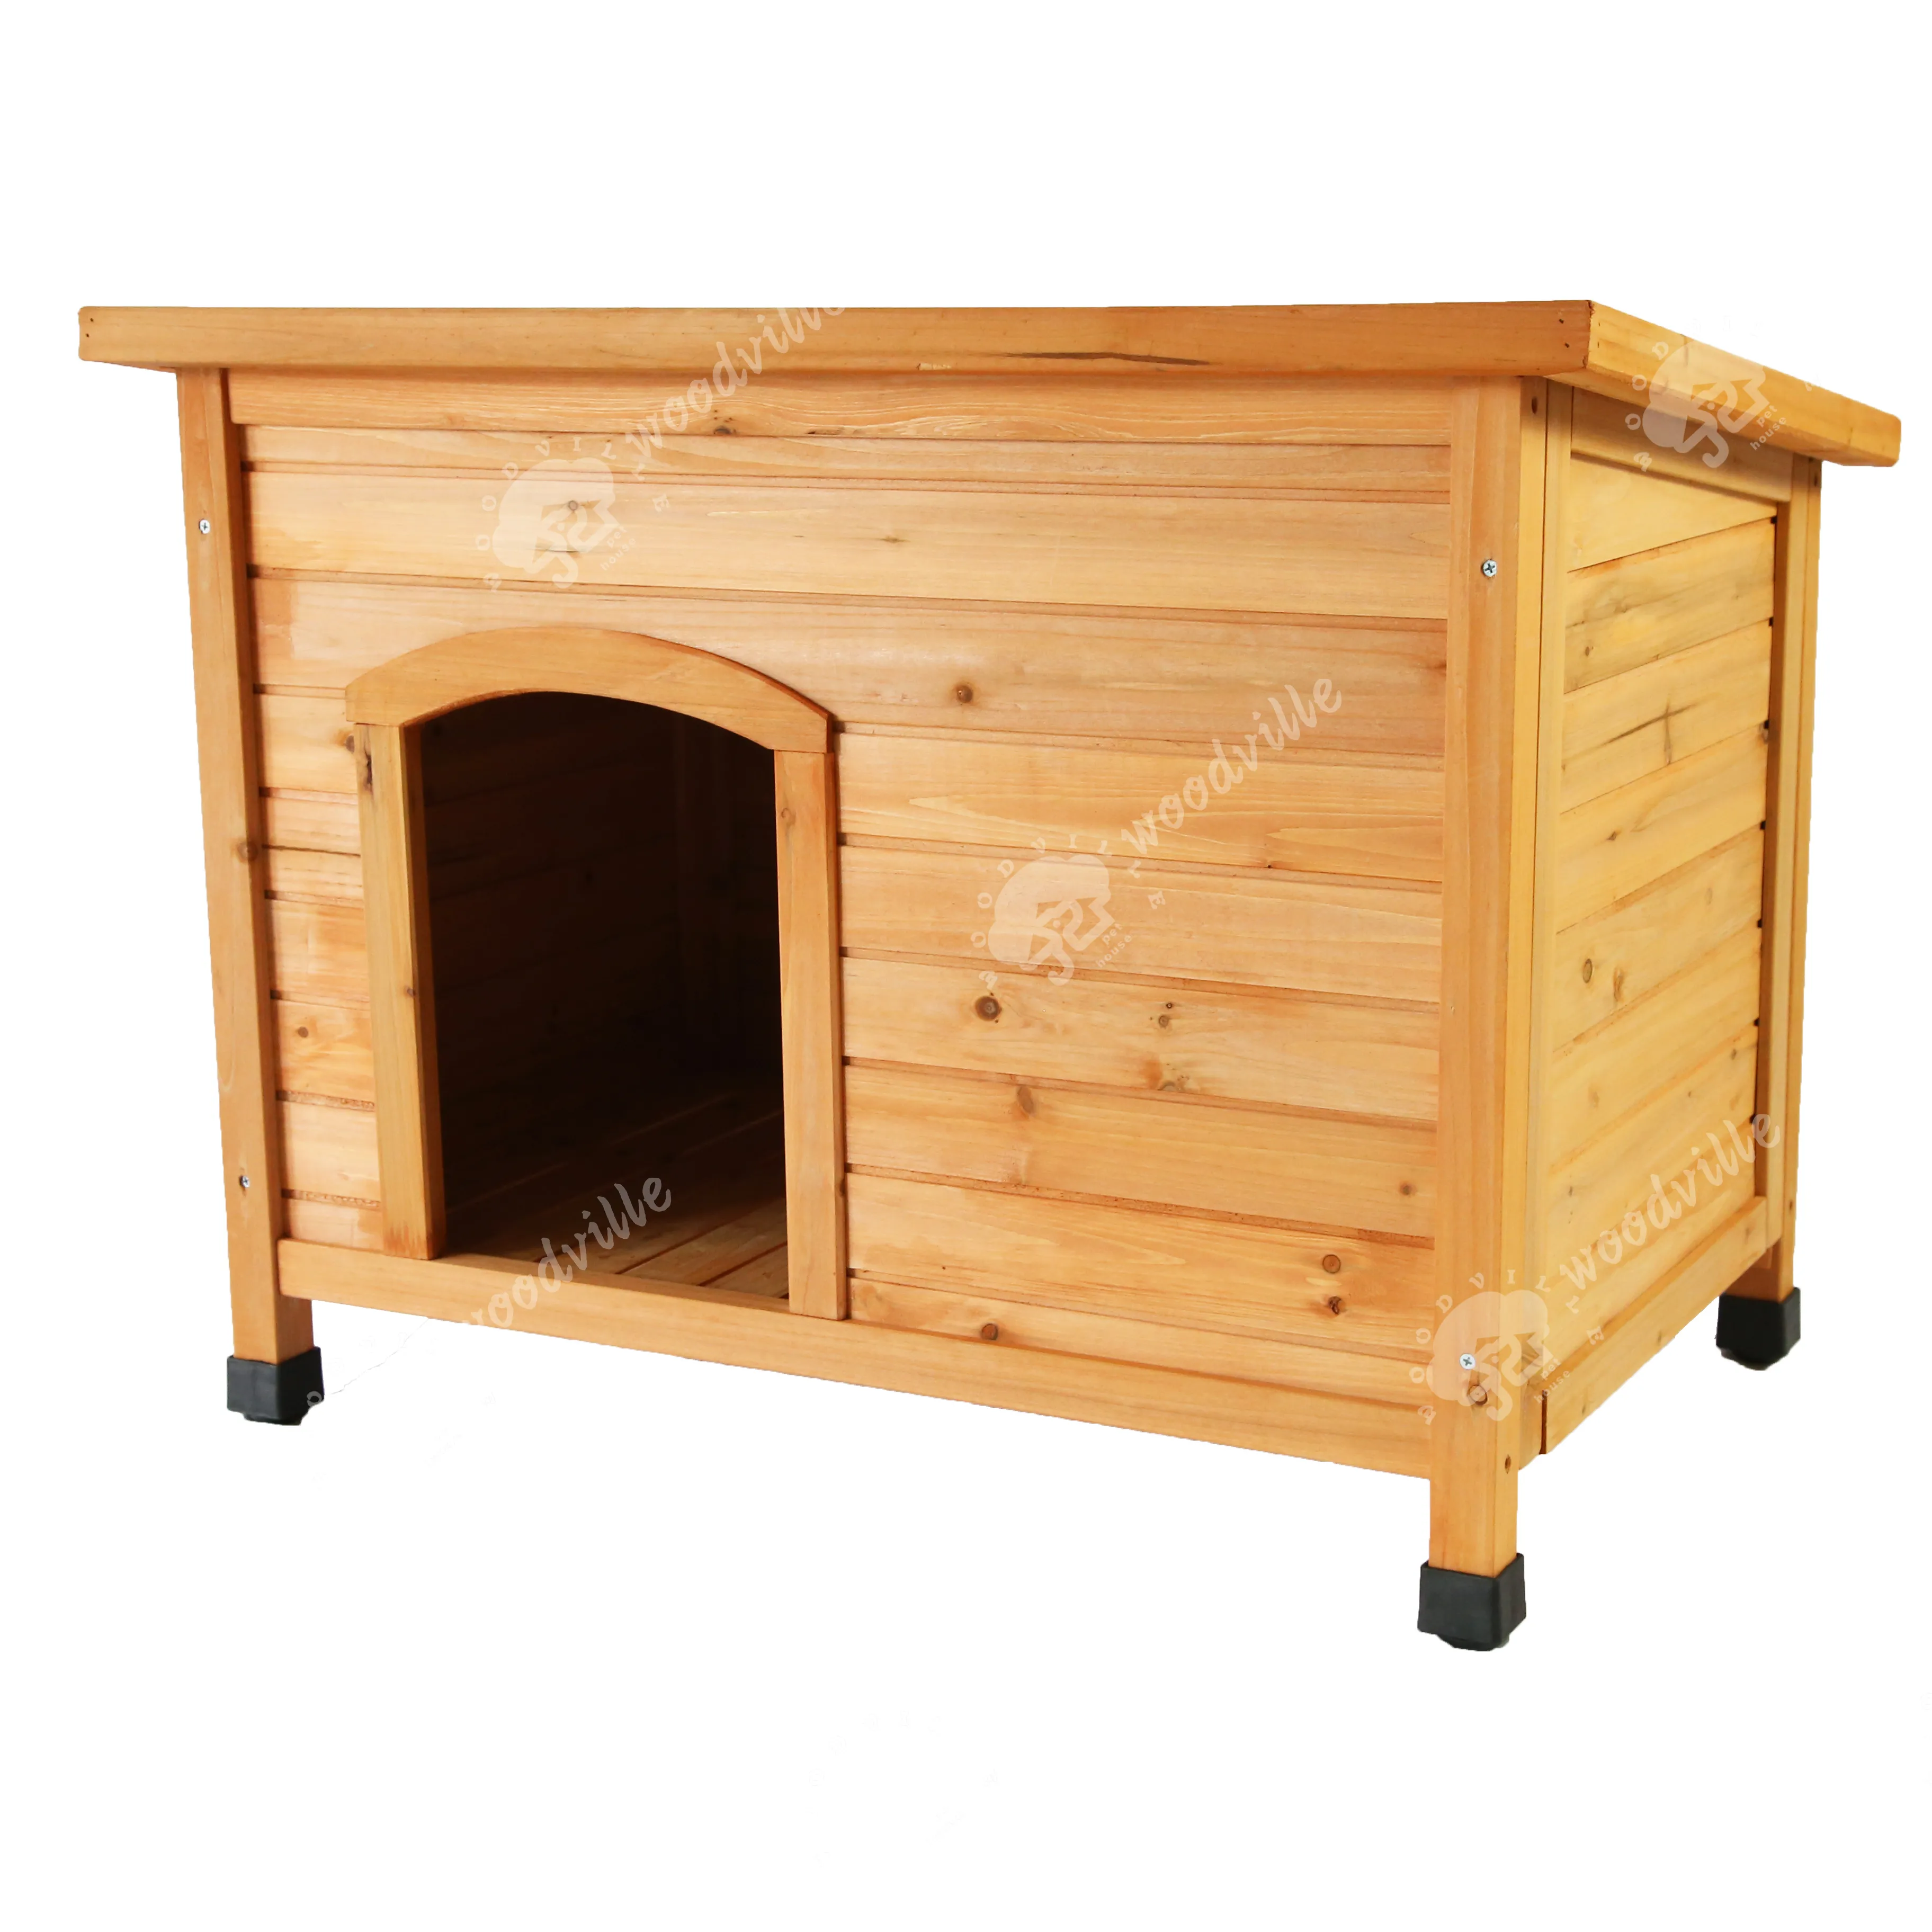 Casa per animali in legno per cani da giardino per cuccioli in legno capanna per animali di fabbricazione cinese casa per animali da cortile